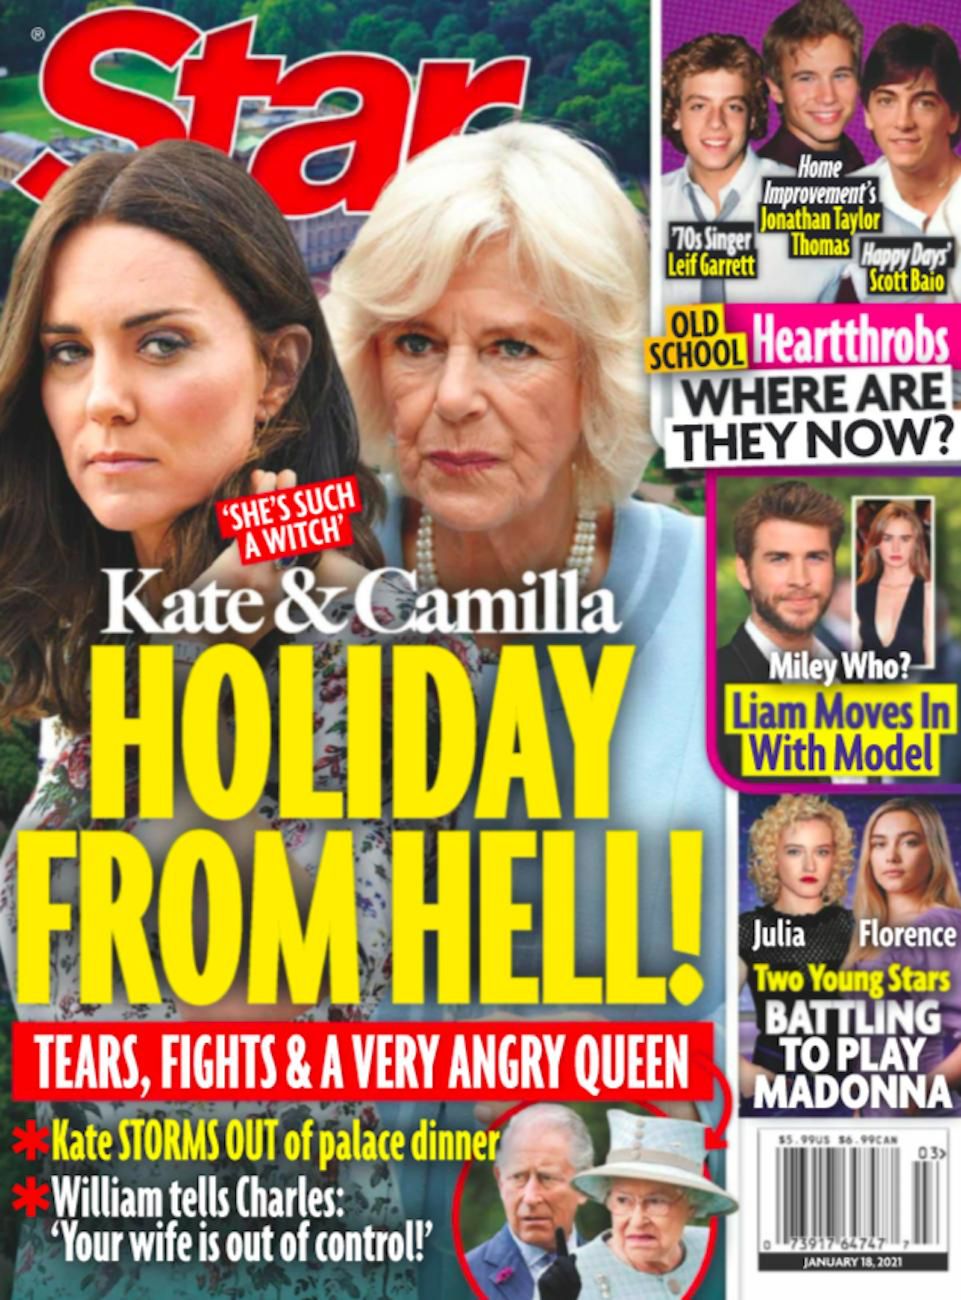 Kate i Camilla urządziły królowej święta z piekła rodem